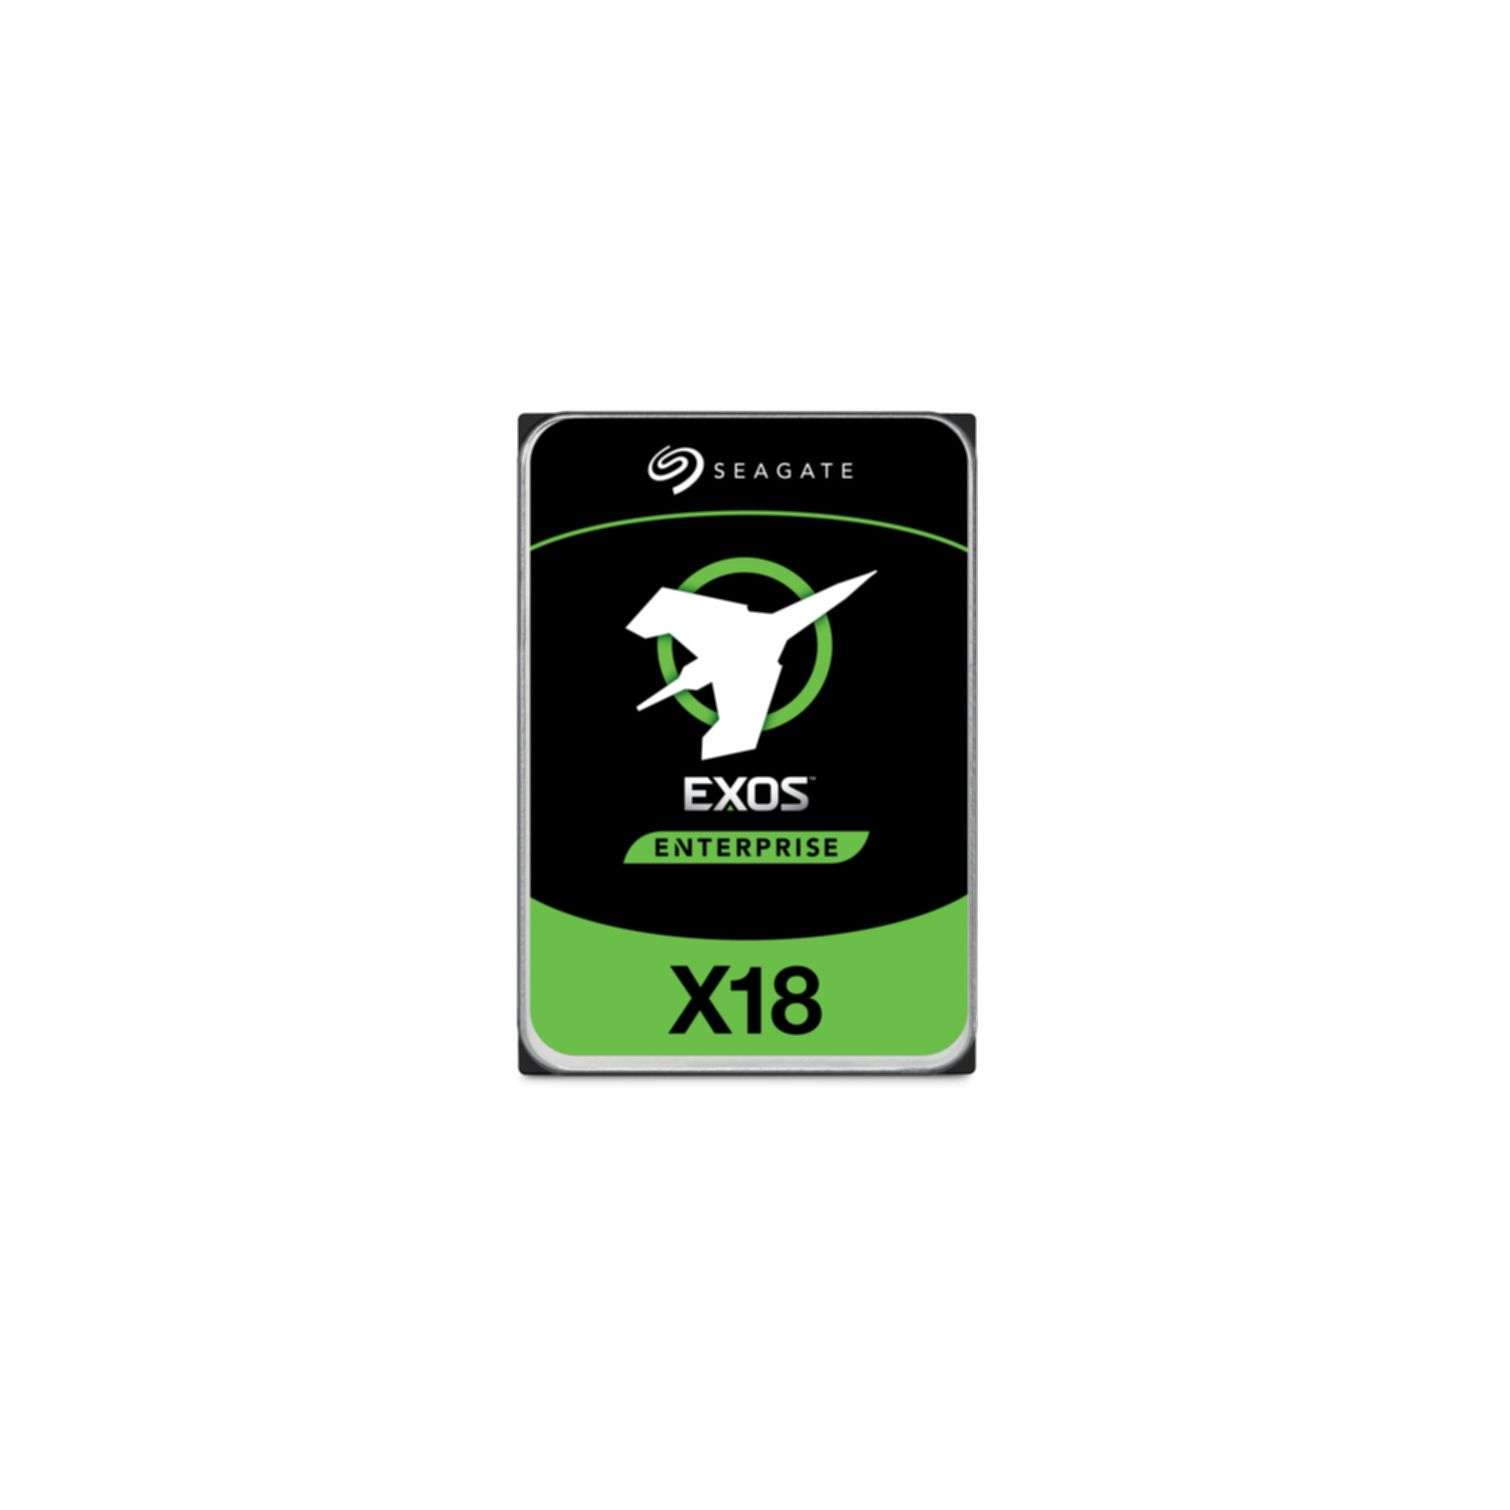 Exos SEAGATE GB, 16000 HDD, intern X18,